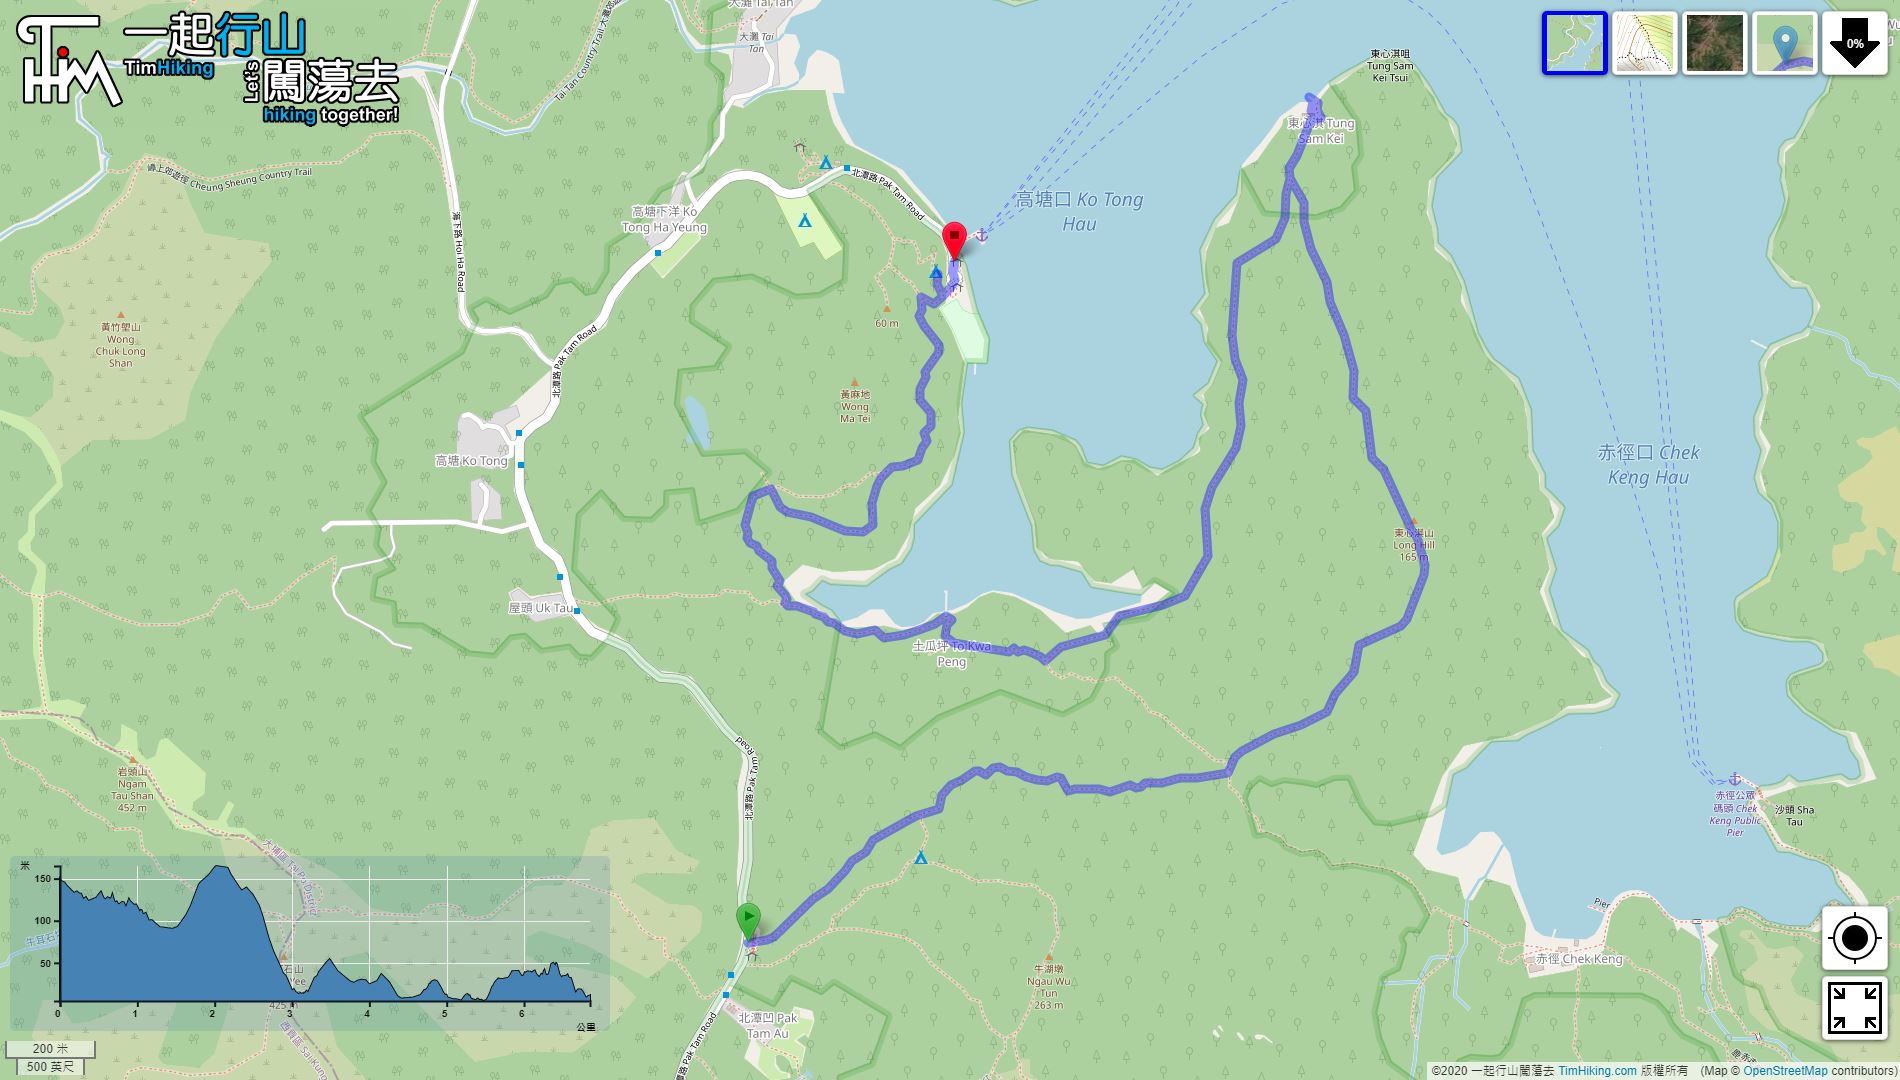 「Long Hill To Kwa Peng」路線Map